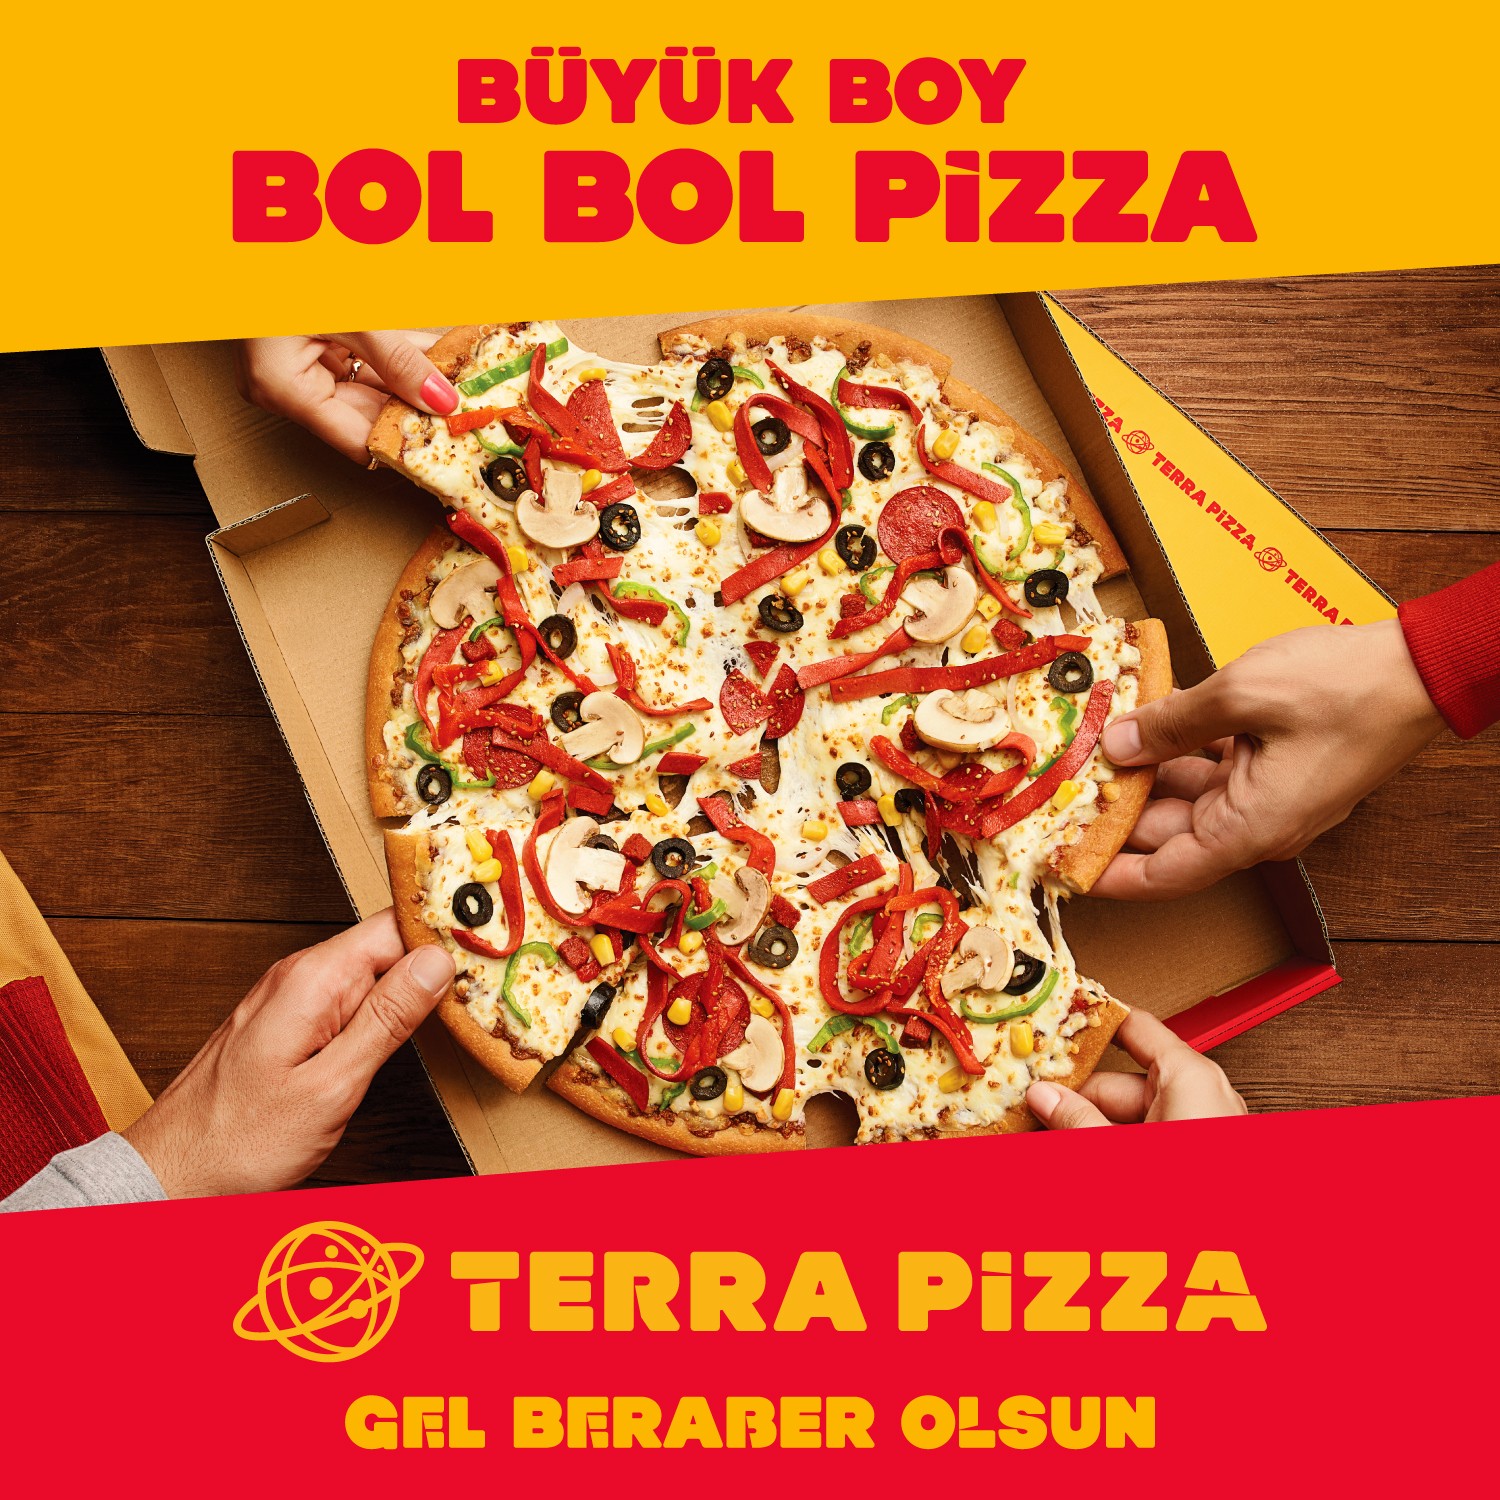 Terra Pizza Büyük Boy Bol Bol Pizza Fiyatı Taksit Seçenekleri